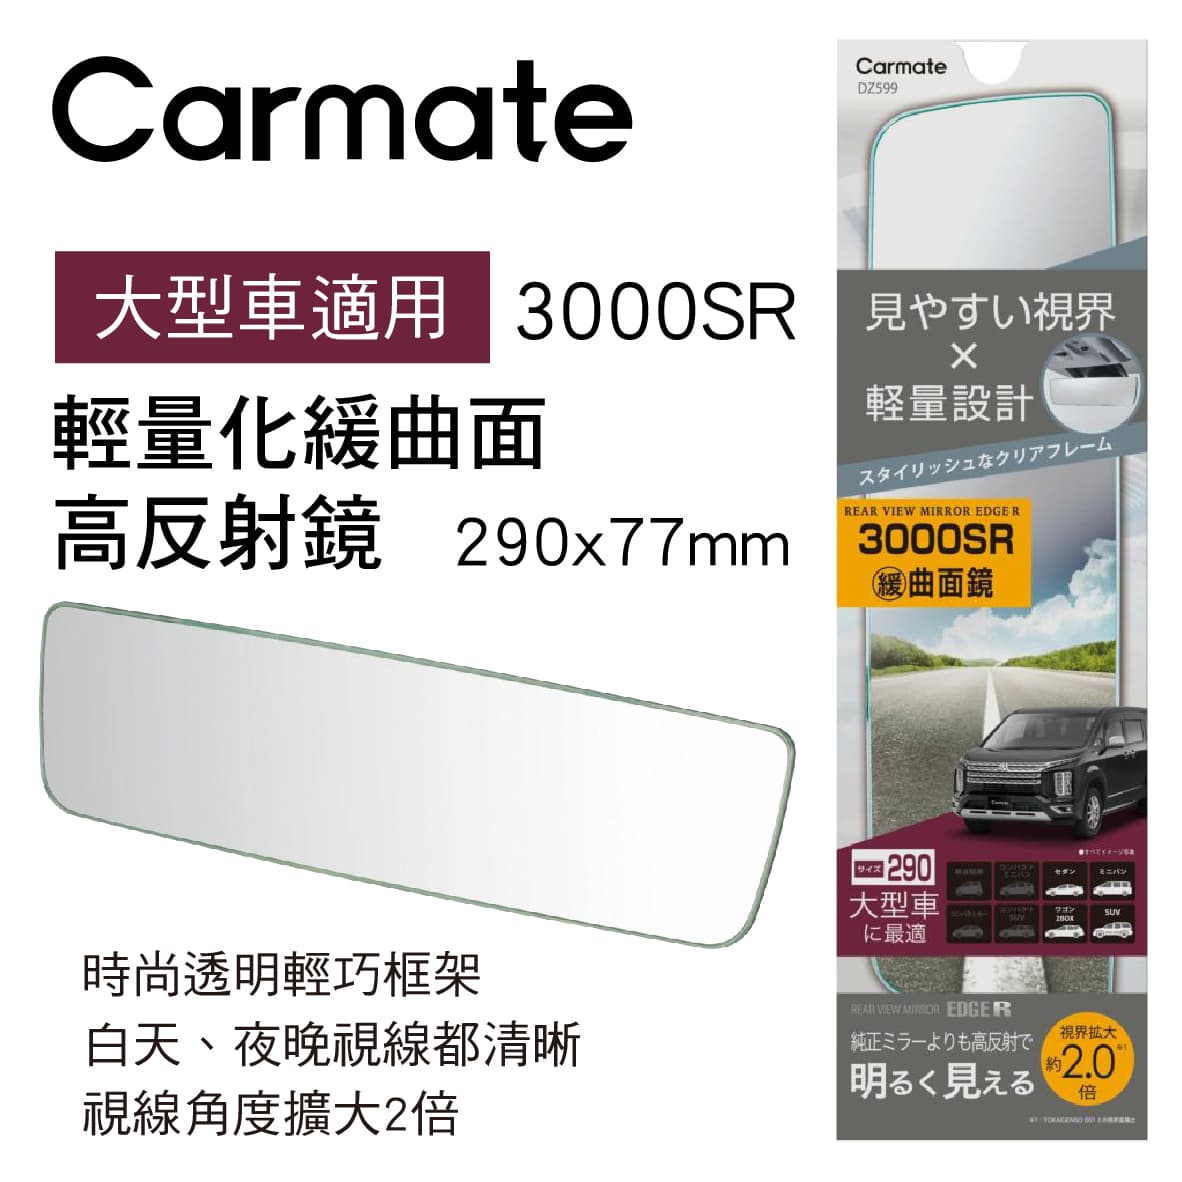 真便宜 CARMATE DZ599 輕量化緩曲面高反射鏡29x7.7cm